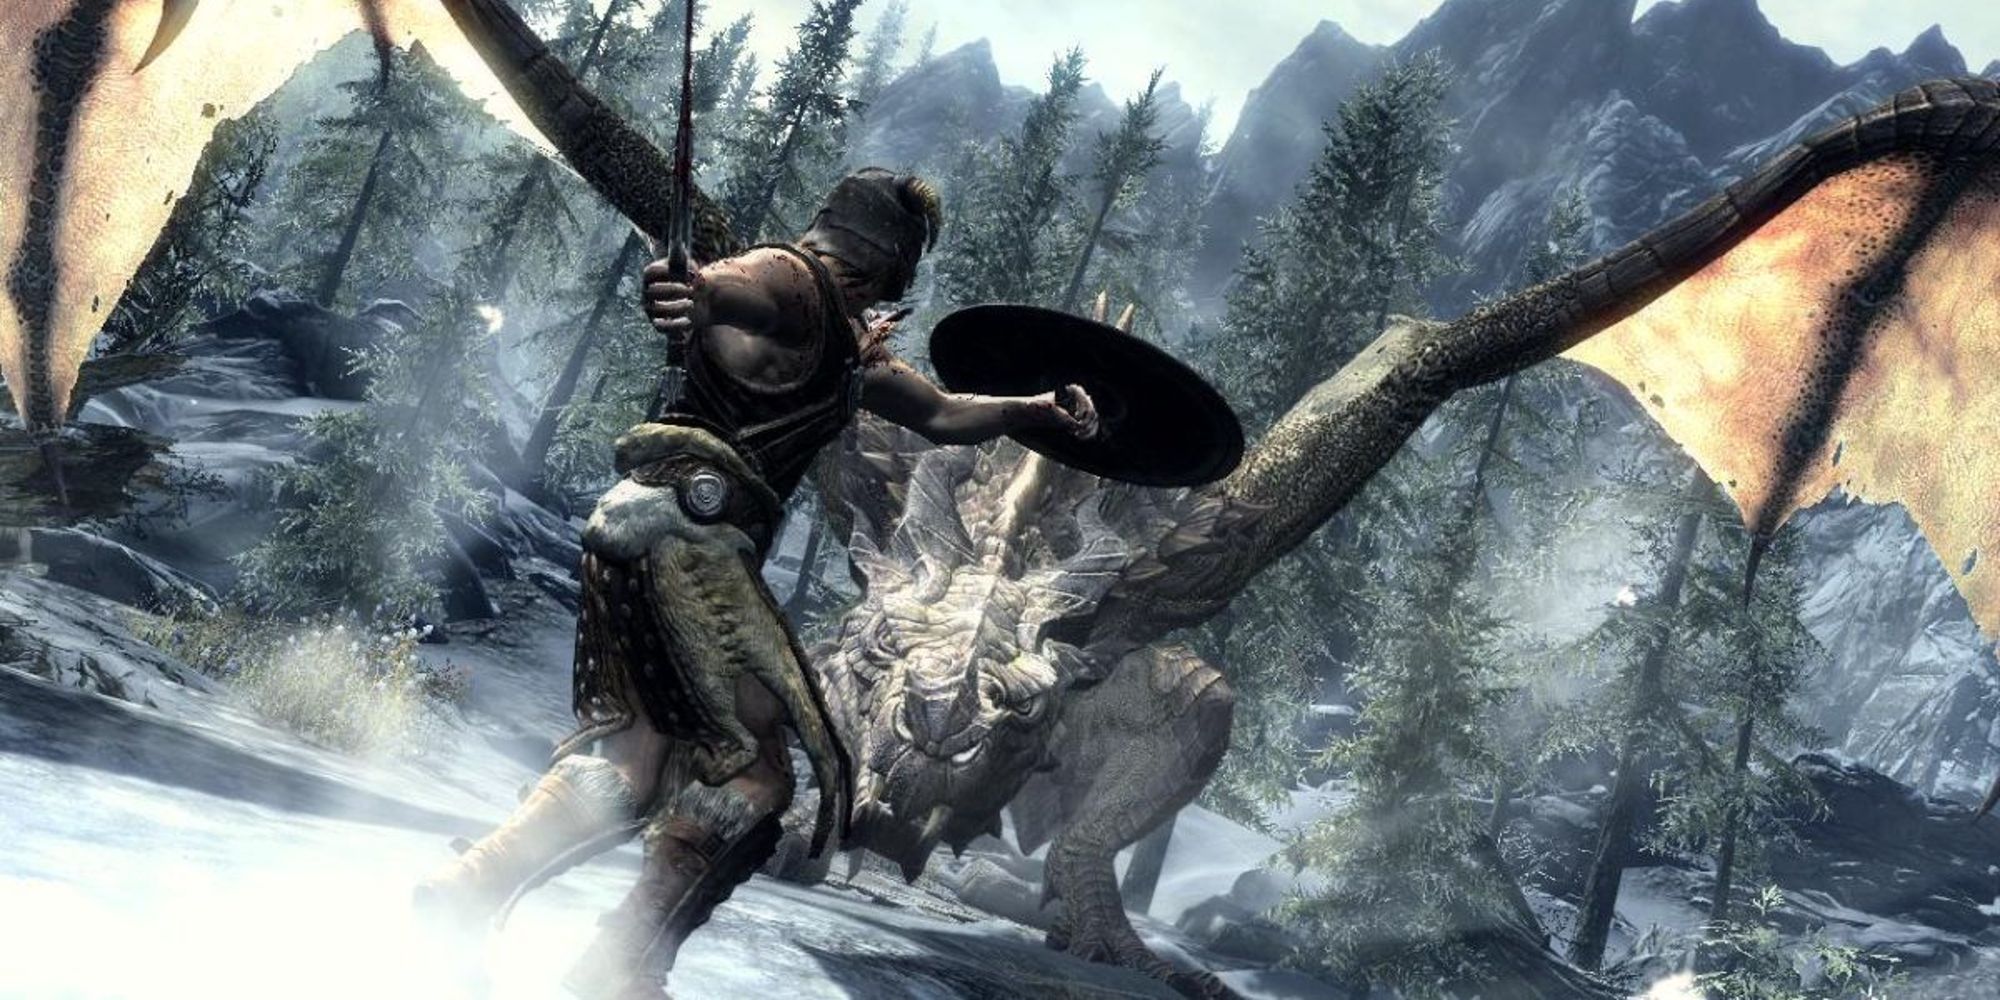 The Dragonborn encountering a dragon in The Elder Scrolls V Skyrim